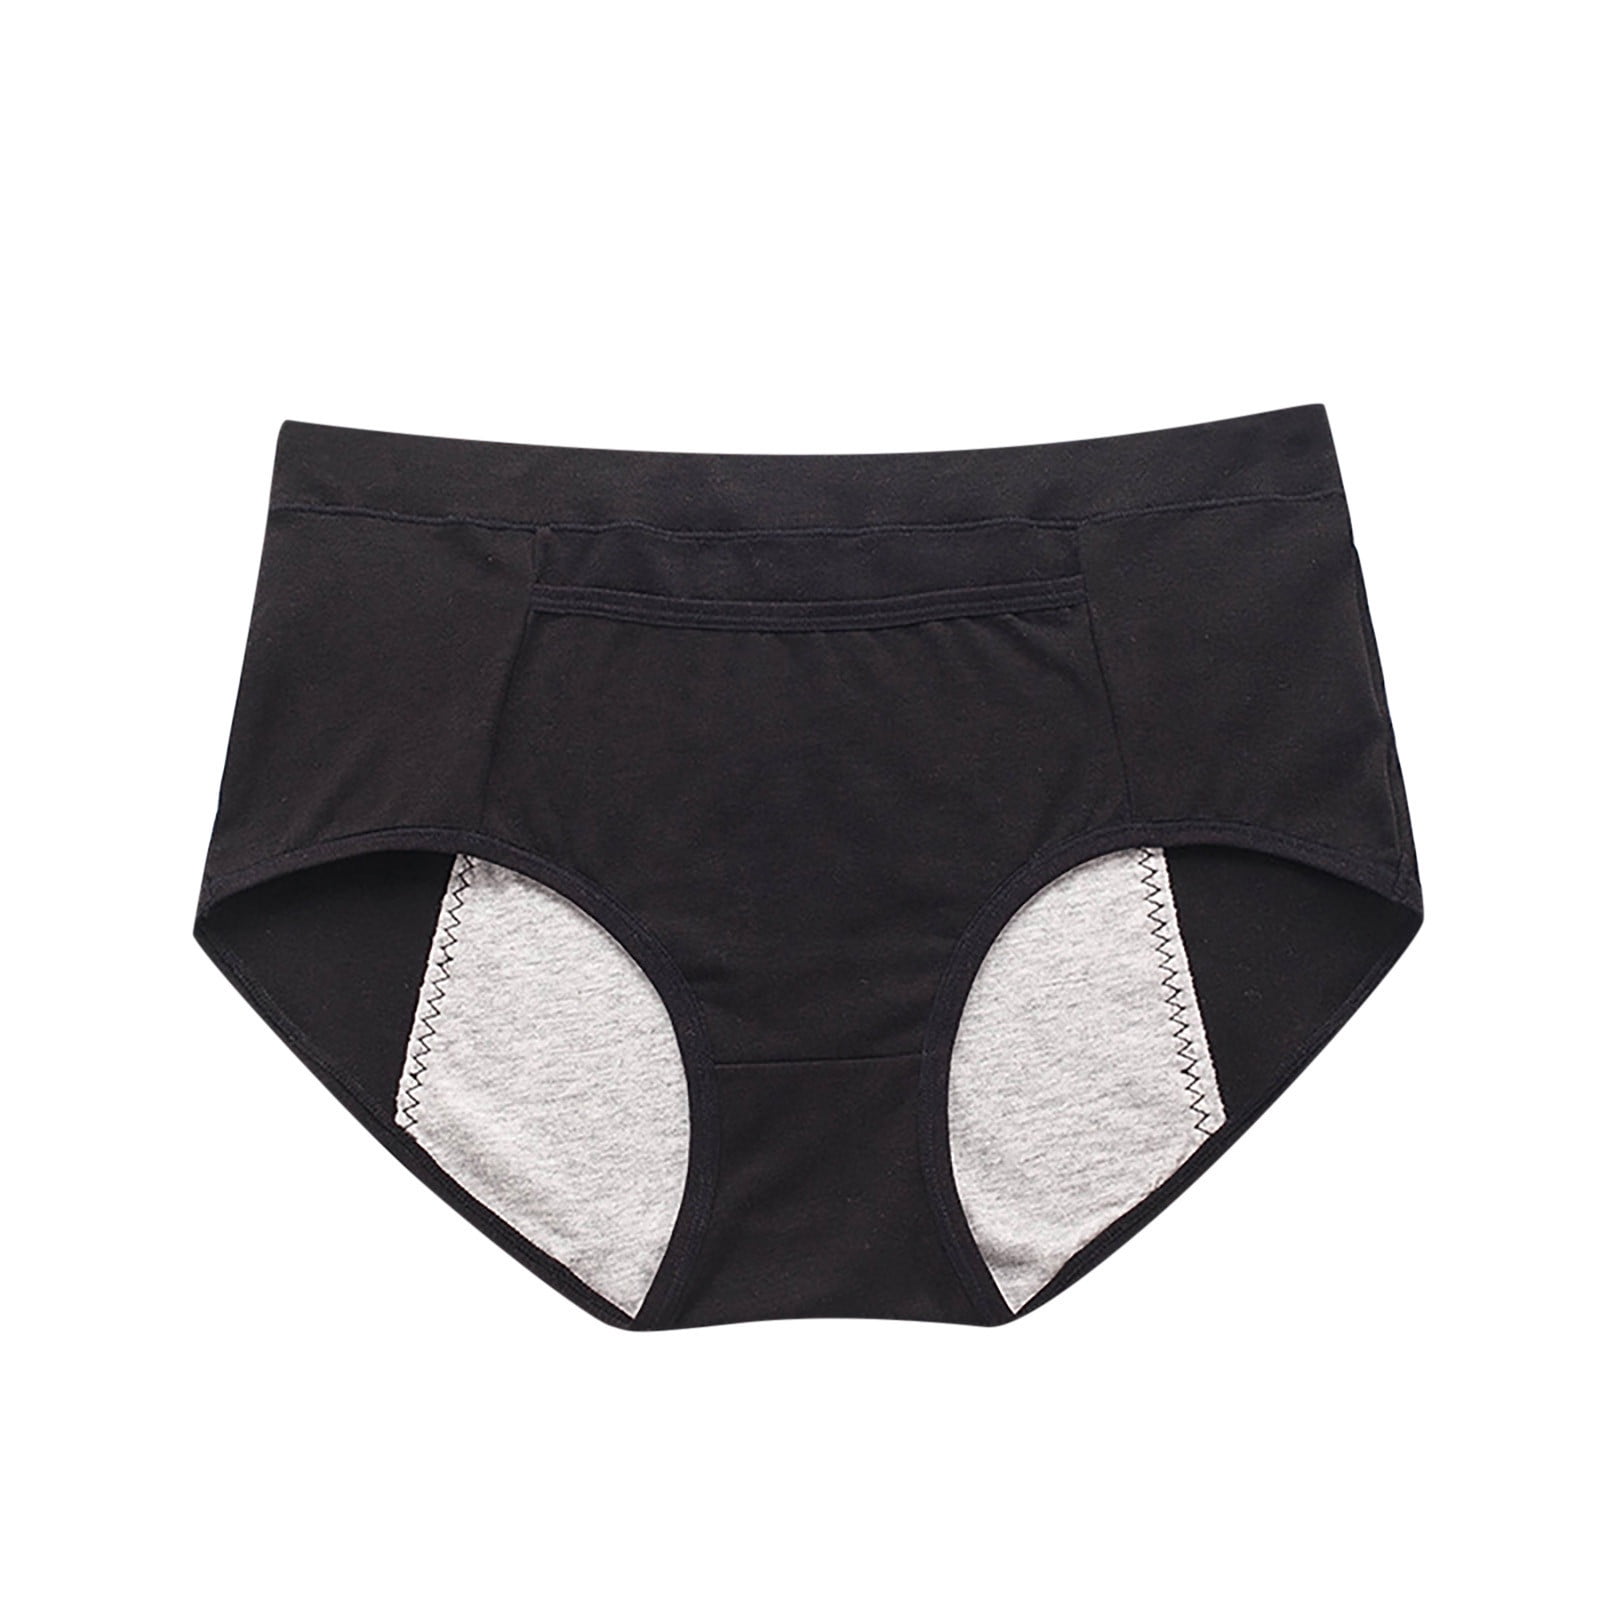 MarinaVida Women Menstrual Thicken Period Leak Proof Panties Cotton  Waterproof Underwear 